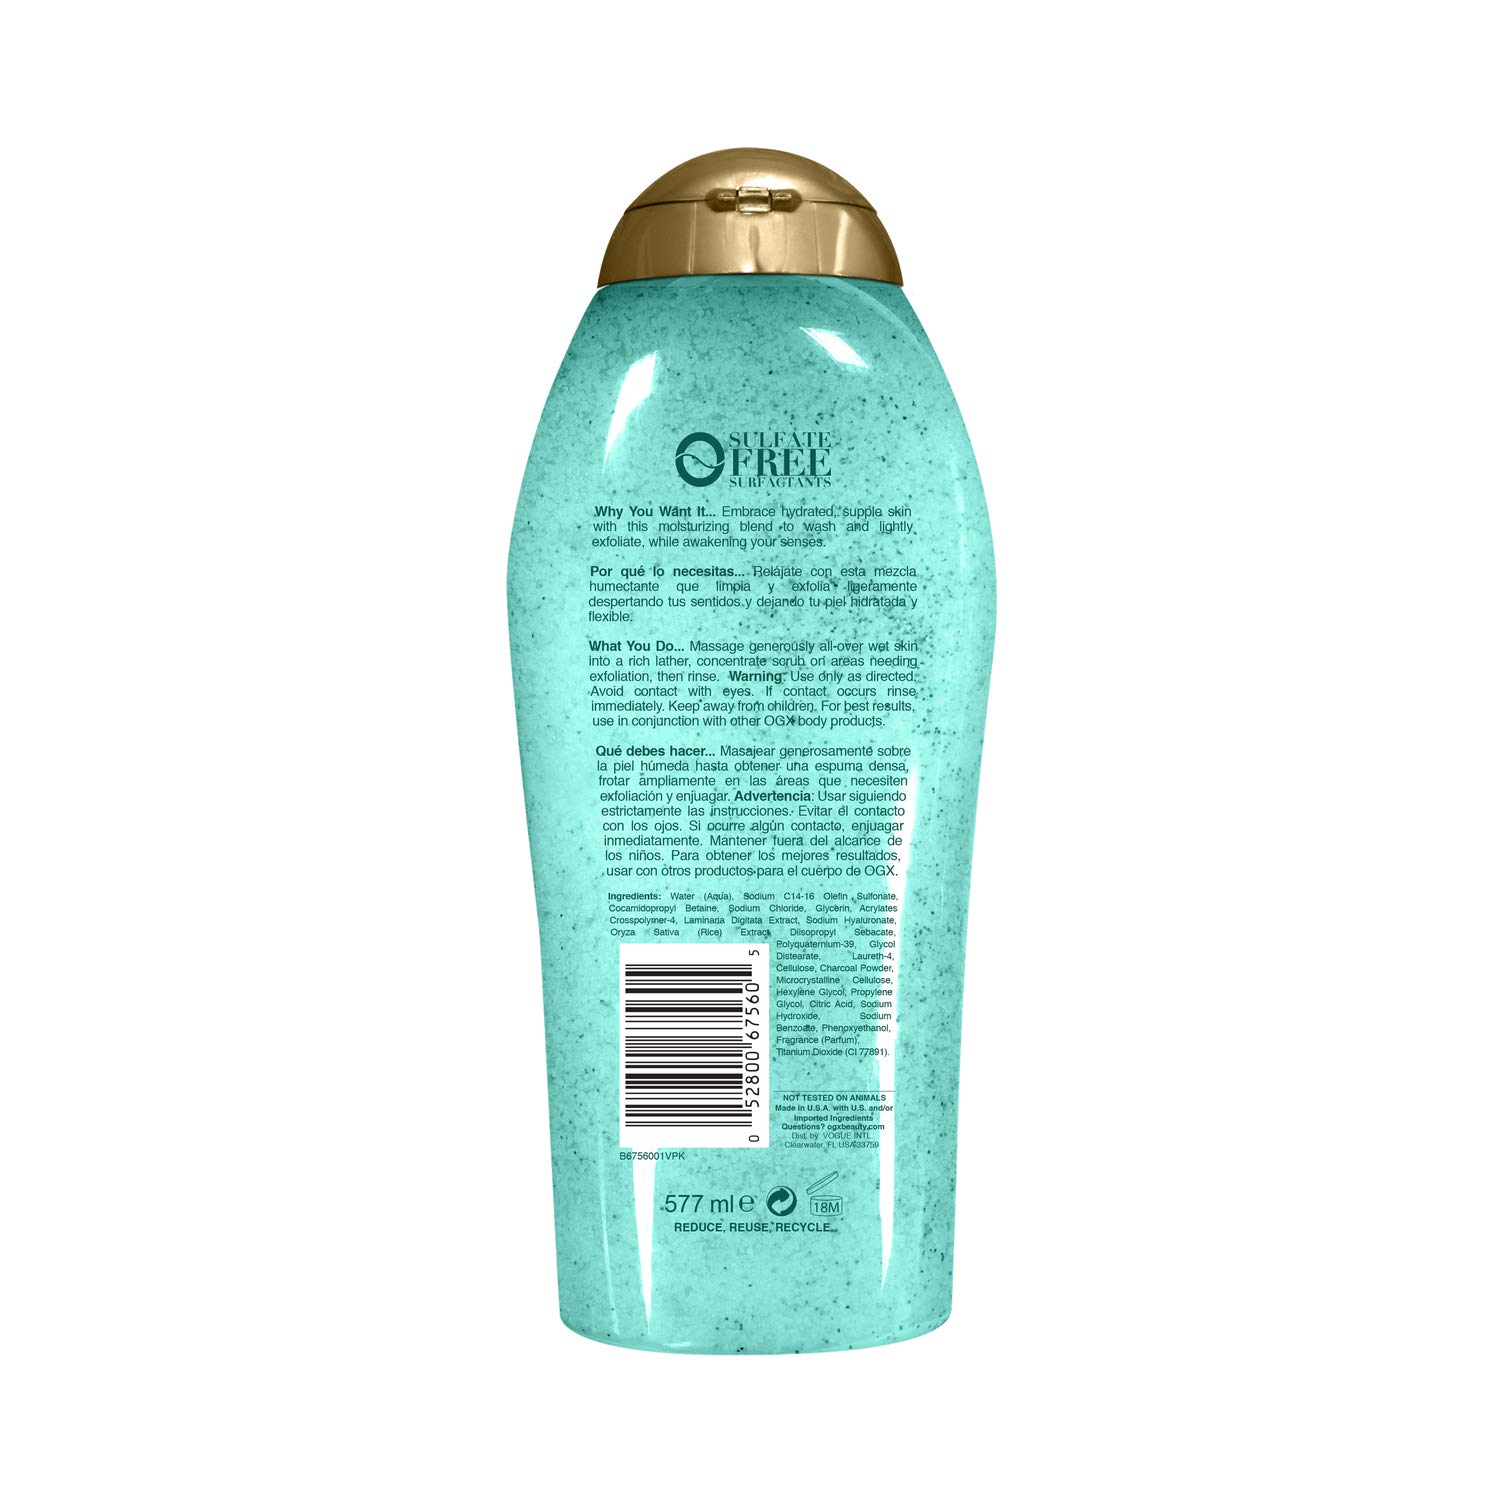 OGX Sea Kelp & Hyaluronic Acid Body Scrub & Wash 19.5 fl oz & Coffee Scrub and Wash, Coconut 19.5 Fl Oz & Extra Creamy + Coconut Miracle Oil Ultra Moisture Body Wash, 19.5 Fl Oz